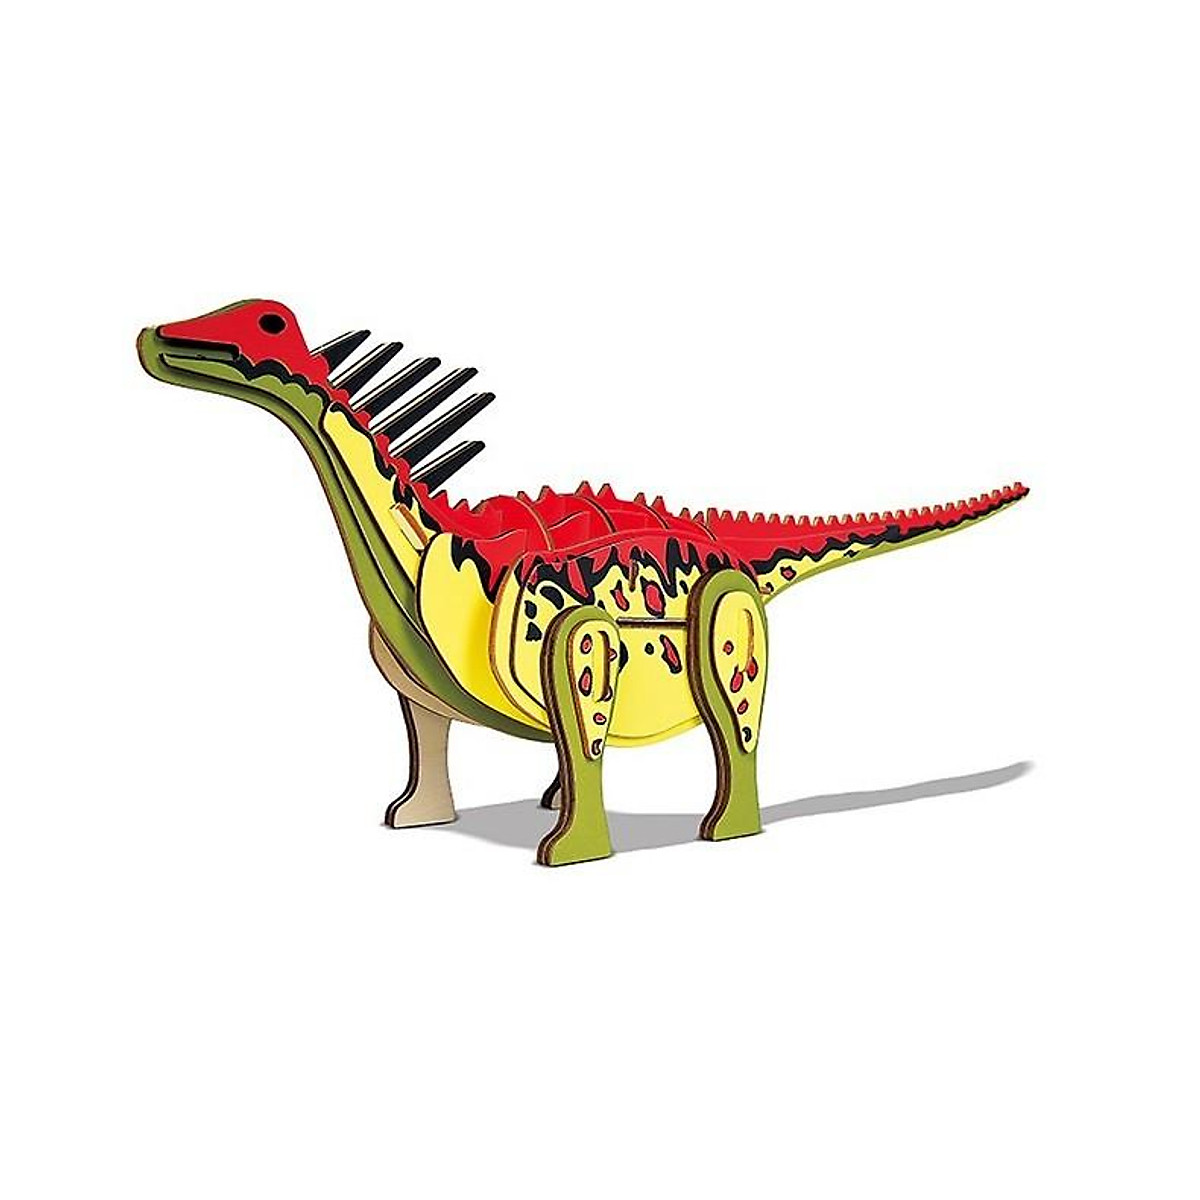 Đưa khủng long vào đời thật bằng Google  VnExpress Số hóa